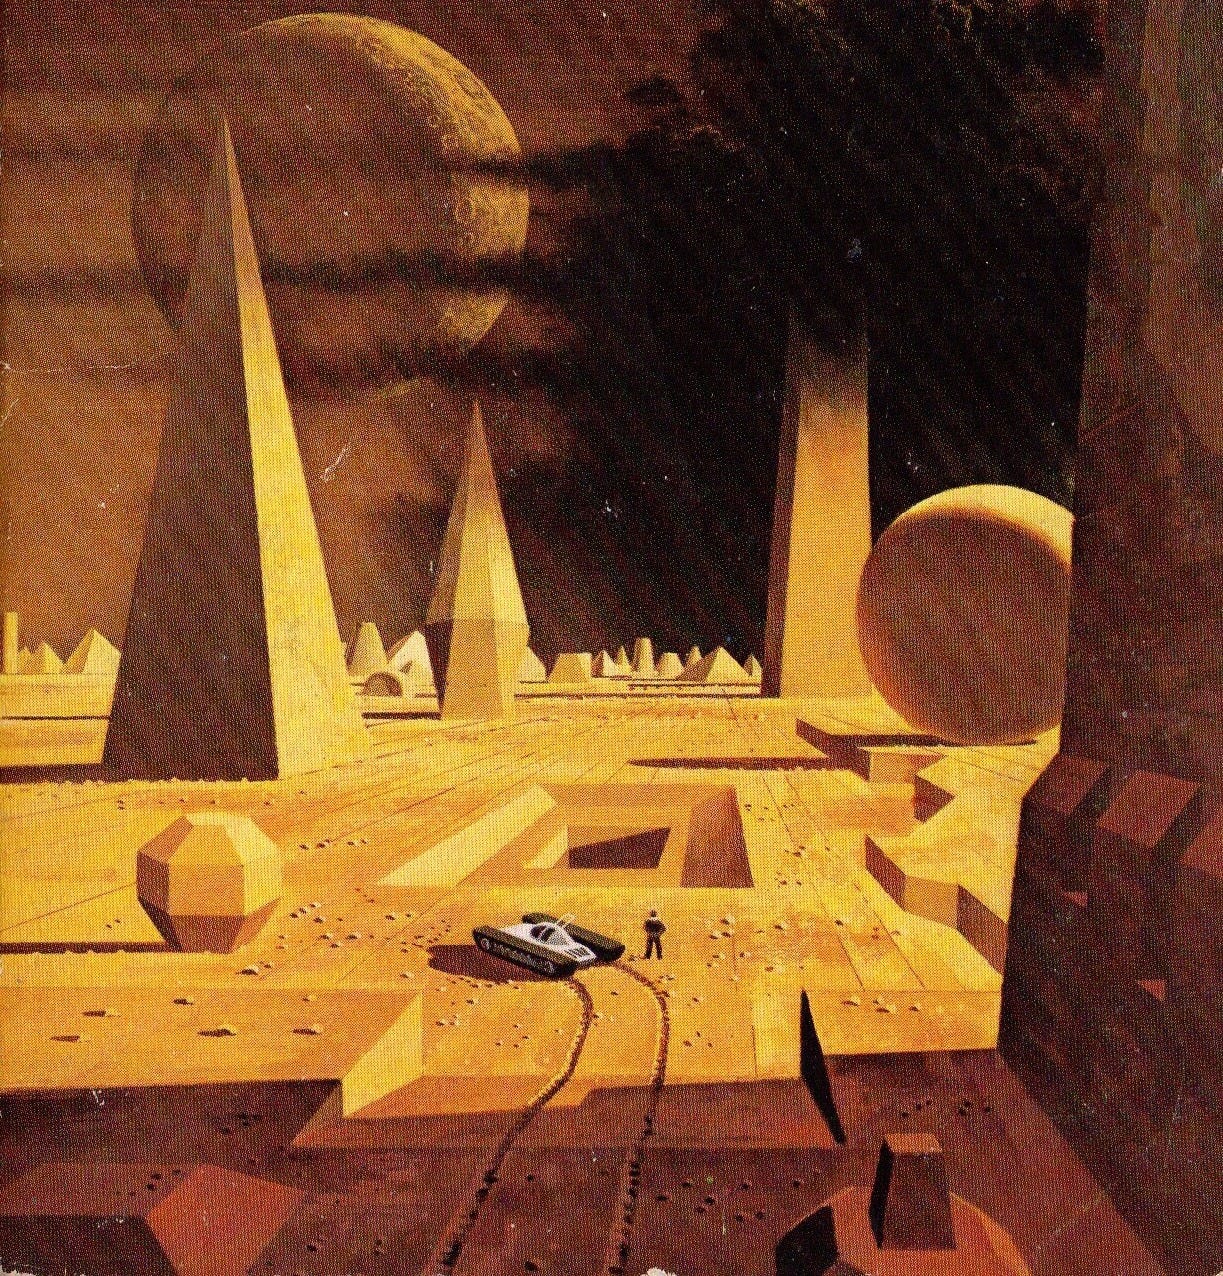 Paisagens de construções arenosas com formas sólidas piramidais e esféricas, com um ateróide ao fundo e um veículo simples no solo, no centro marrom claro da imagem, com uma pessoa ao lado - tudo pequeno, ao longe.